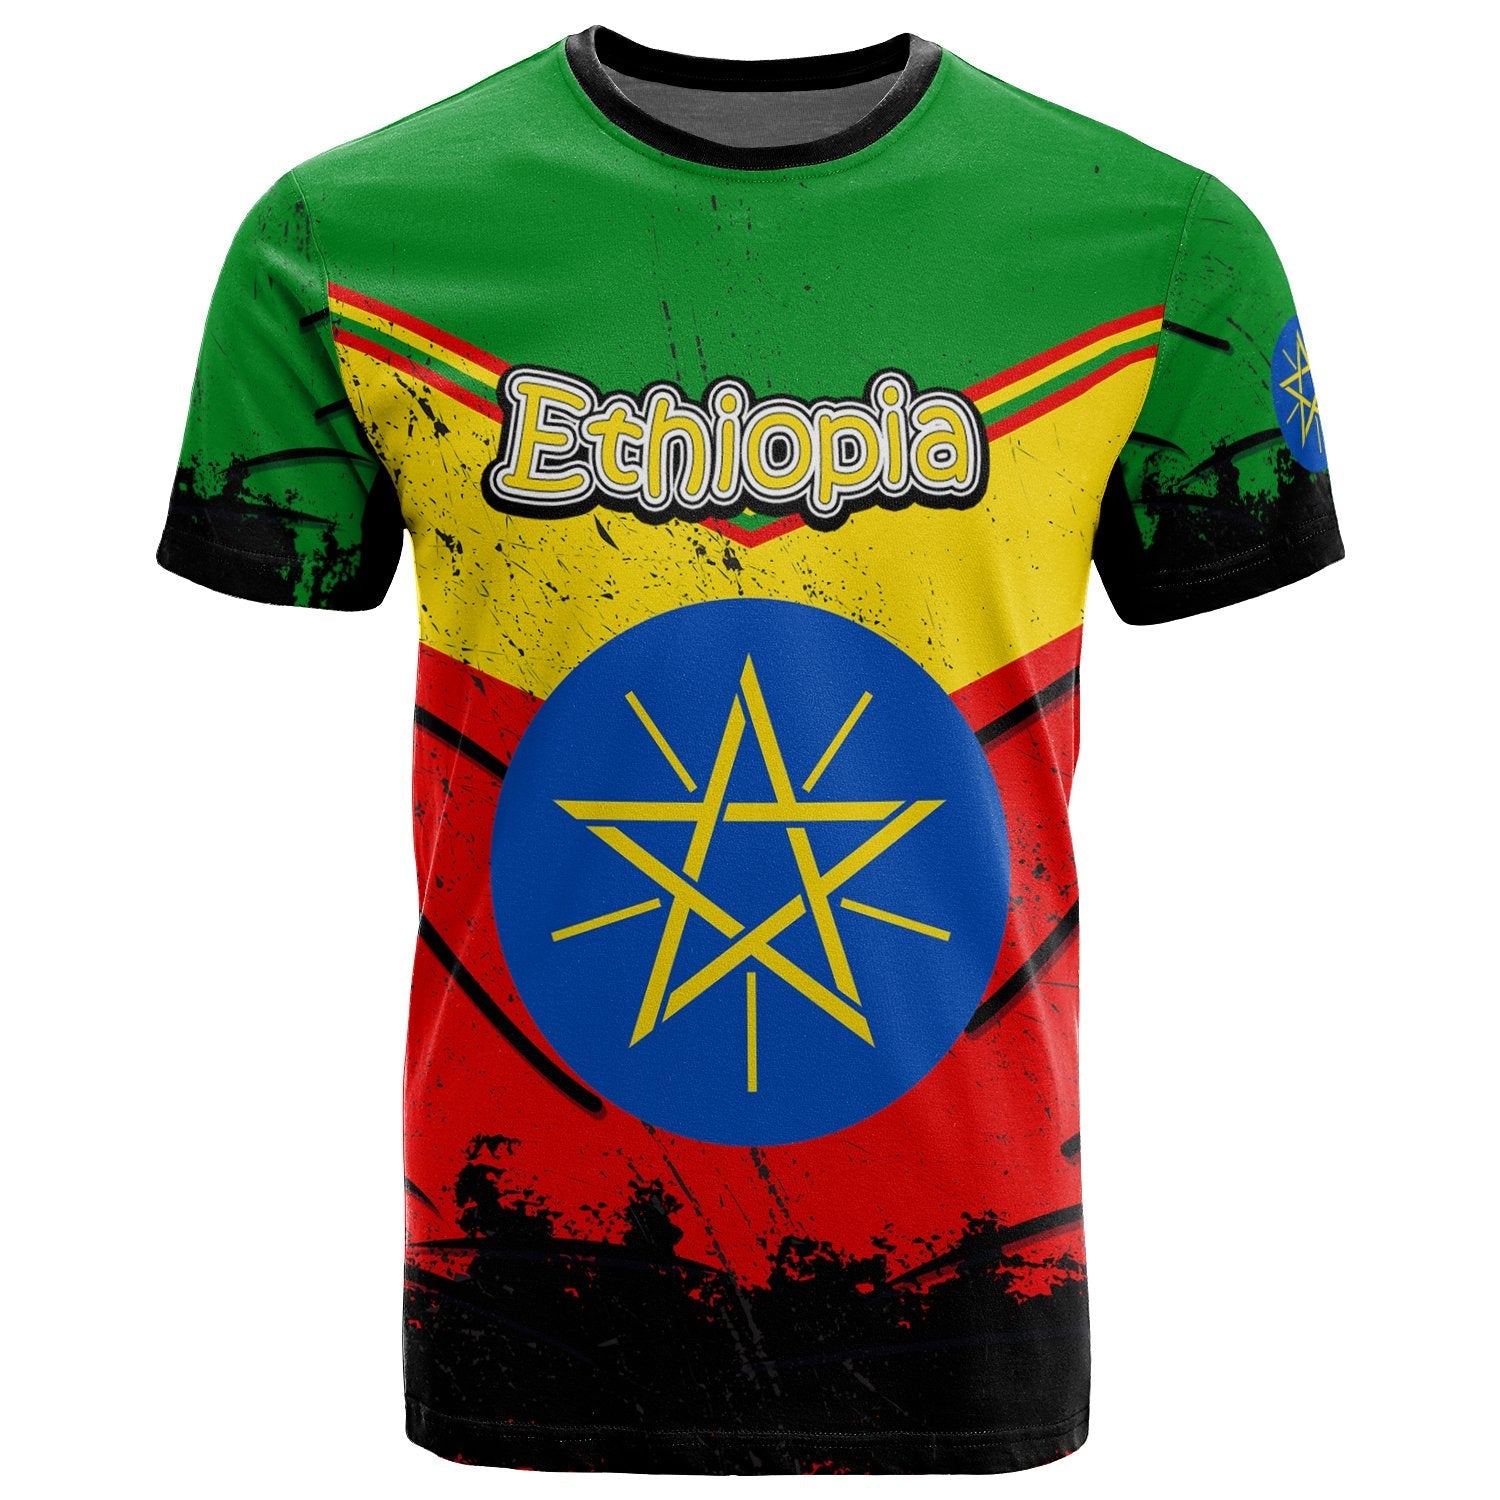 ethiopia-t-shirt-vintage-grunge-style